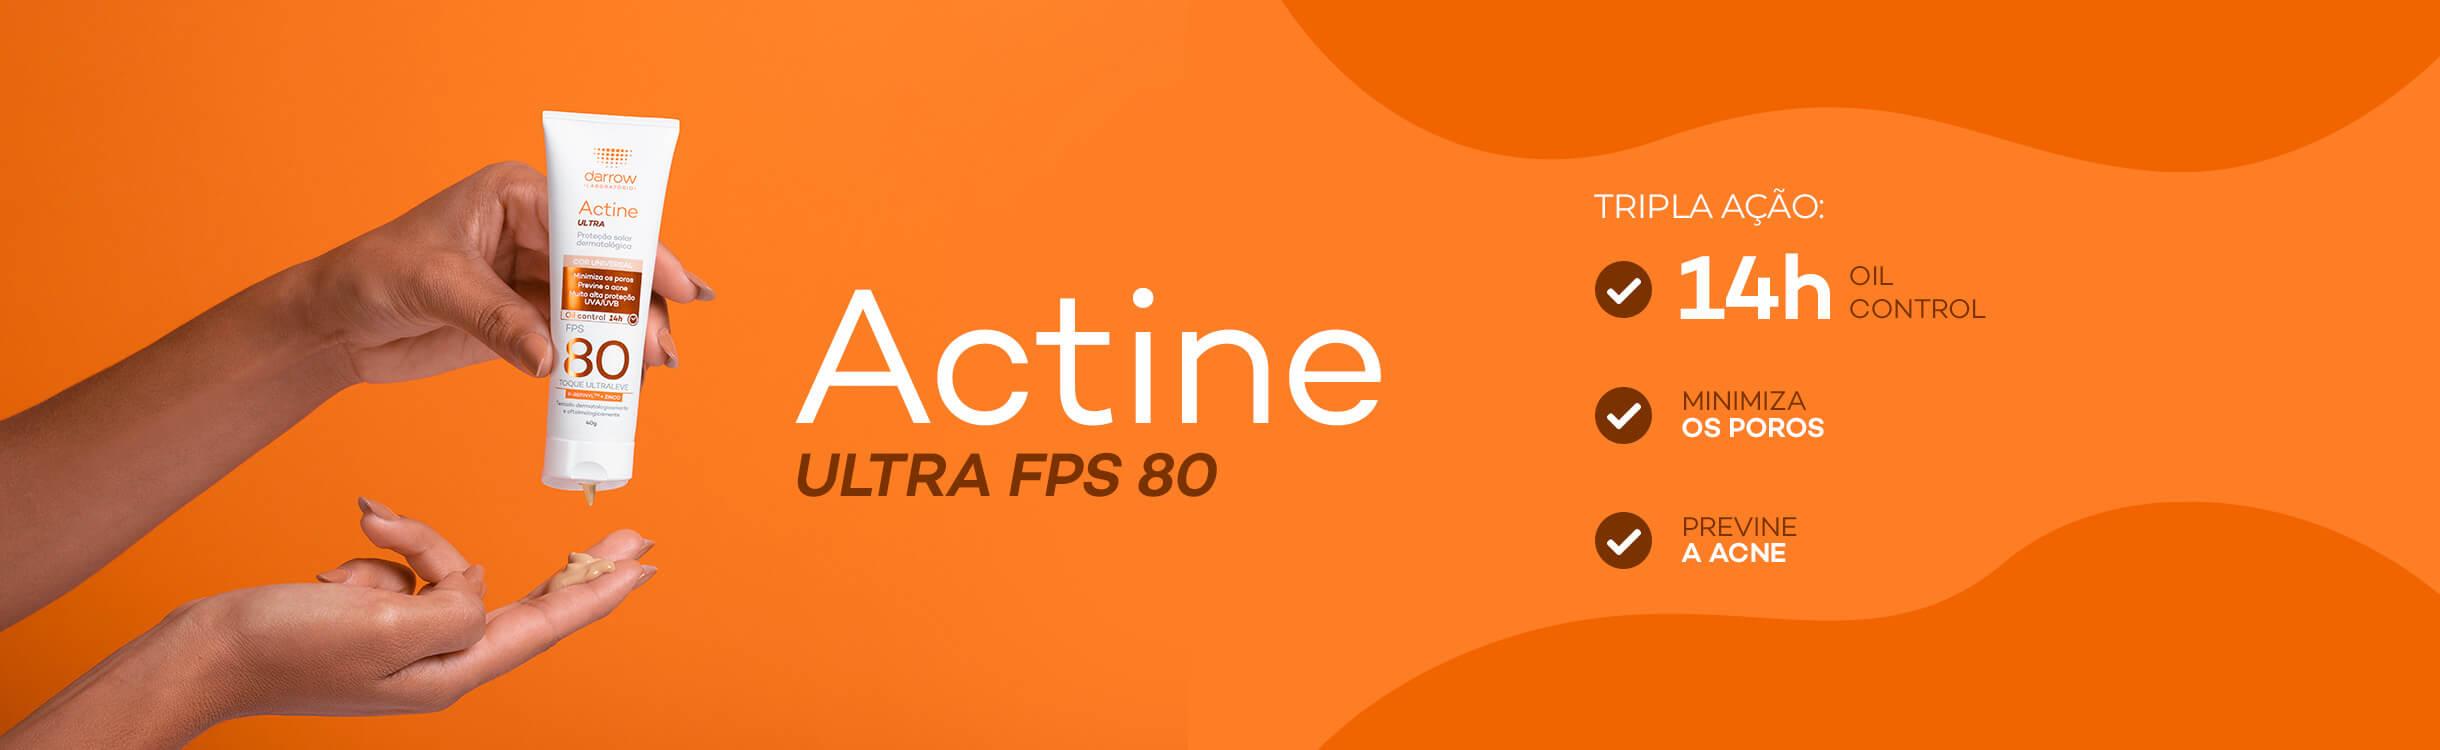 Actine Ultra FPS80